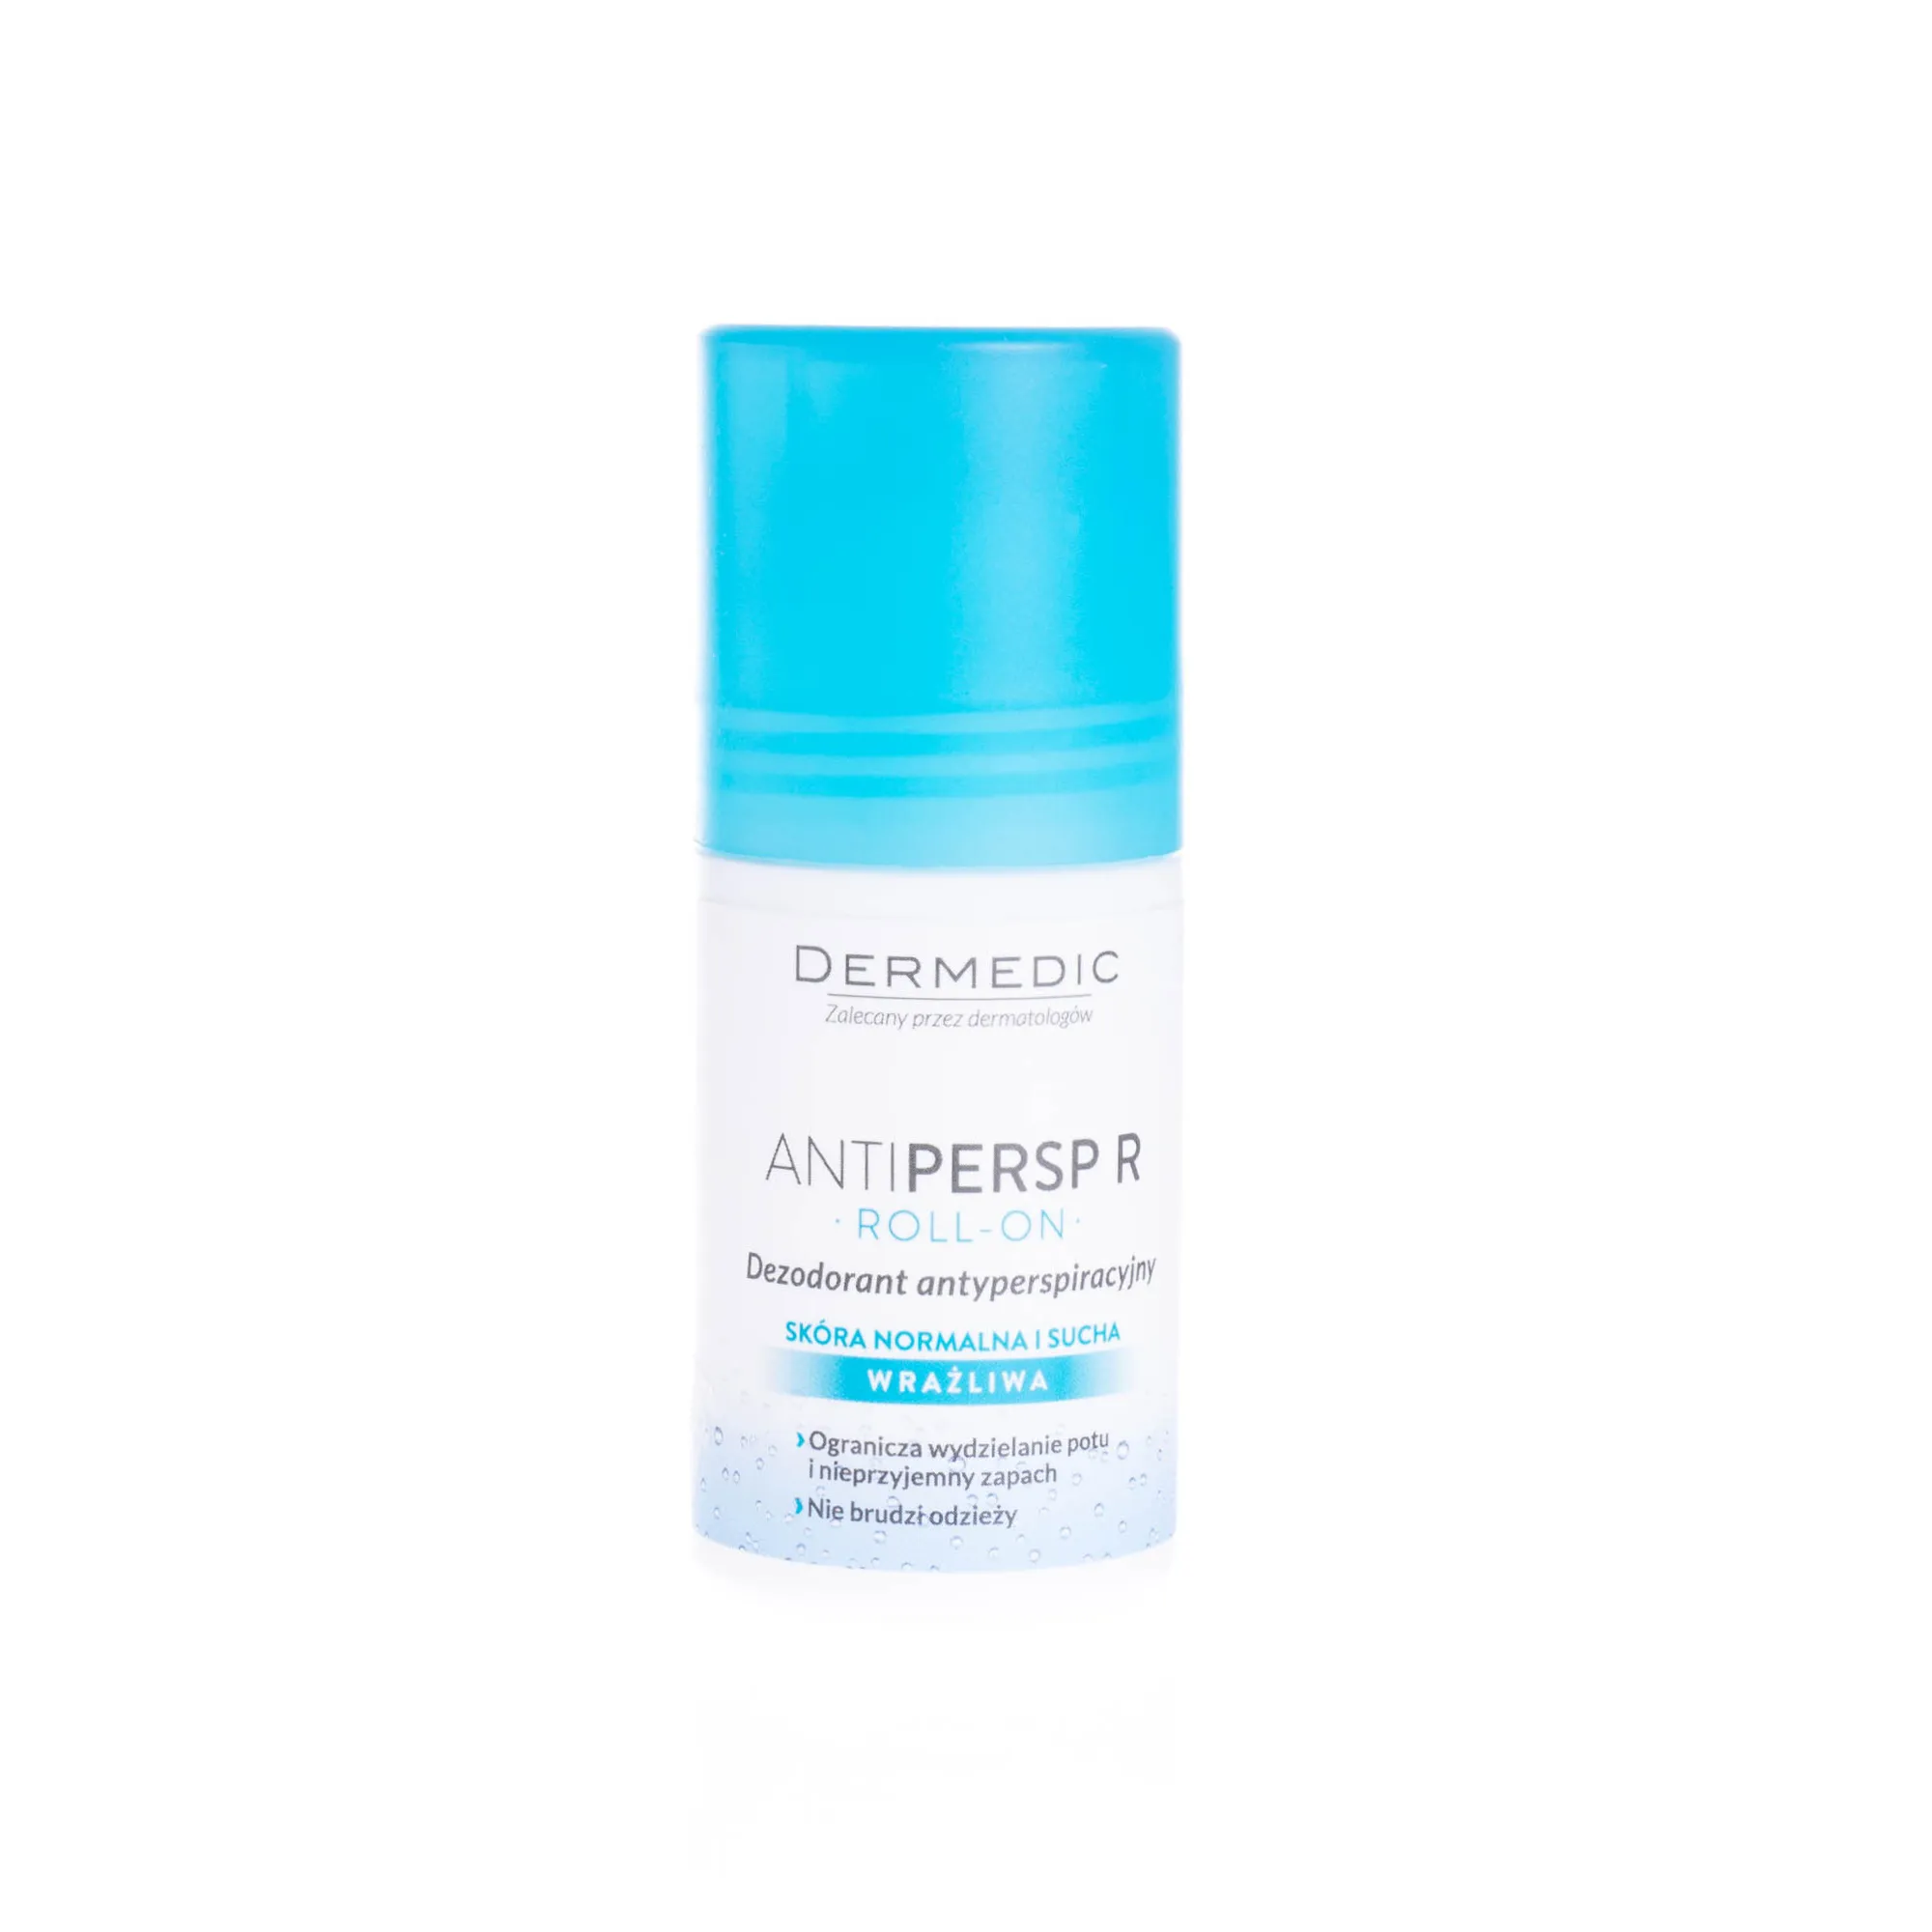 Dermedic Antipersp R, dezodorant antyperspiracyjny, 60 g